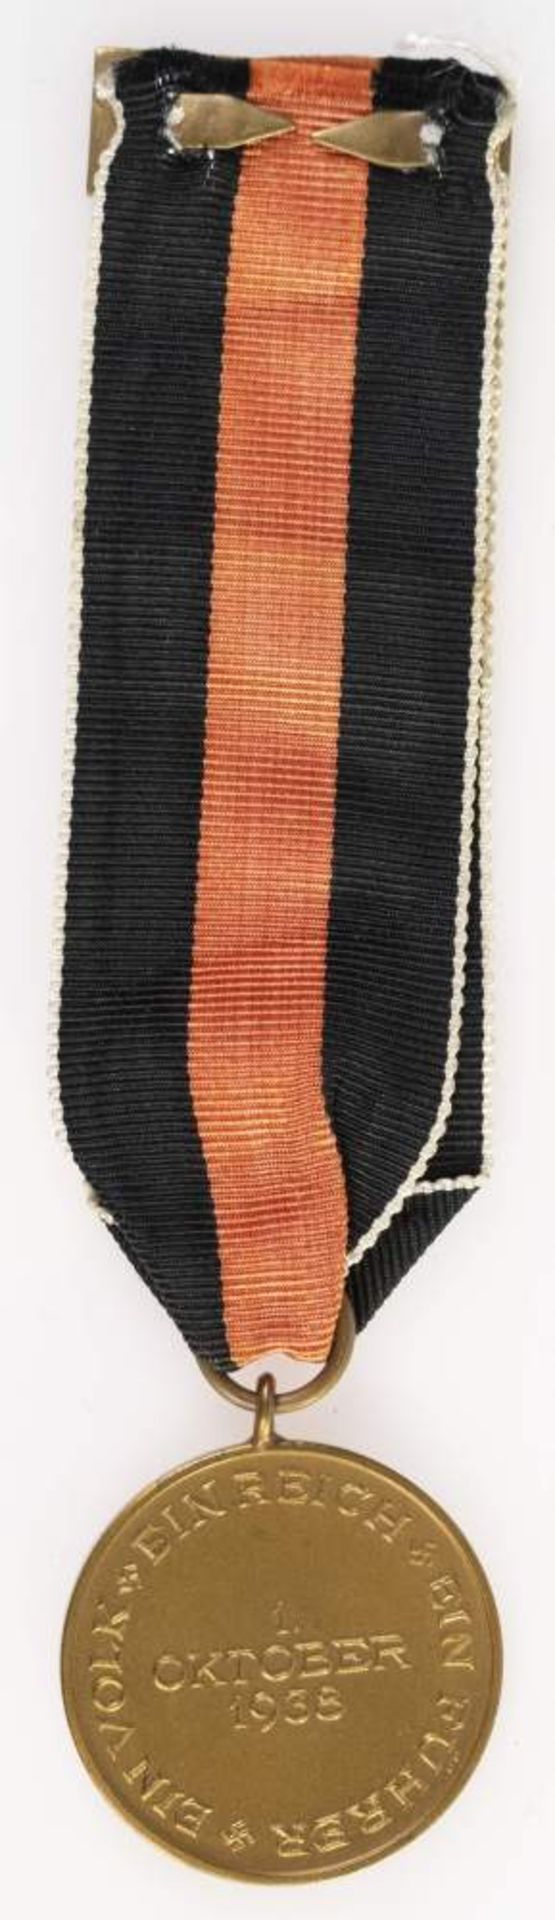 Sudetenland Medaille zur Erinnerung an den 1. Oktober 1938 mit Spange Prager Burg, am Band, OEK - Bild 2 aus 2